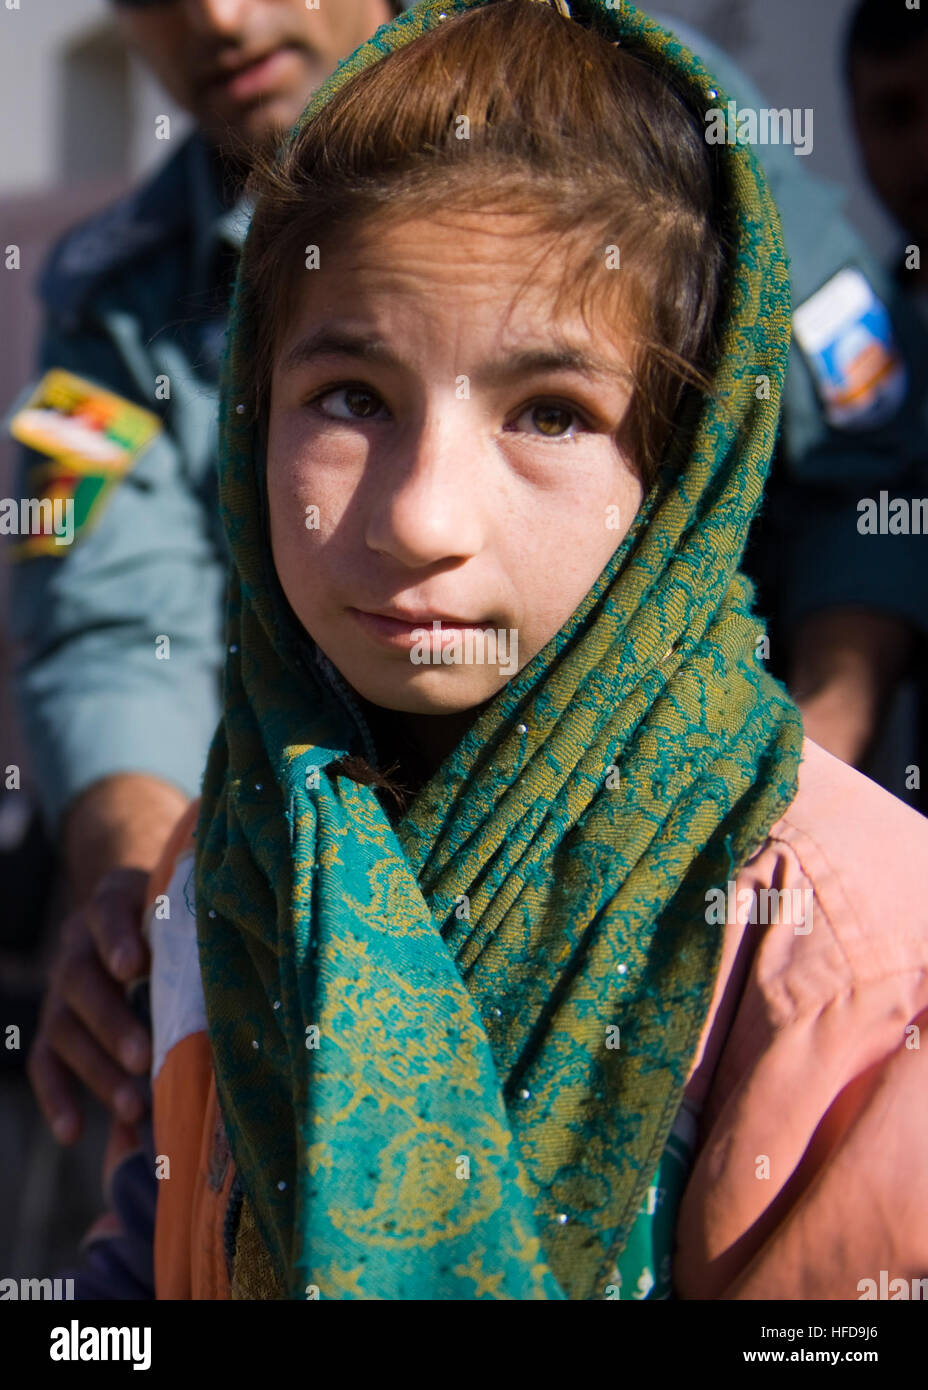 Ein afghanisches Mädchen posiert für ein Foto vor dem afghanischen nationalen Polizisten und Mitglieder der Koalition Dienst an einer Grundschule in der Nähe von Kandahar Flugplatz Schulbedarf erhalten. Während des Besuchs sprach afghanischen und Koalition Führer zu den Kindern über die Bedeutung von Bildung und gutes Benehmen vor Aushändigung Schulmaterial. Afghanische Polizei geben Schulmaterial, Kandahar Kinder 344798 Stockfoto